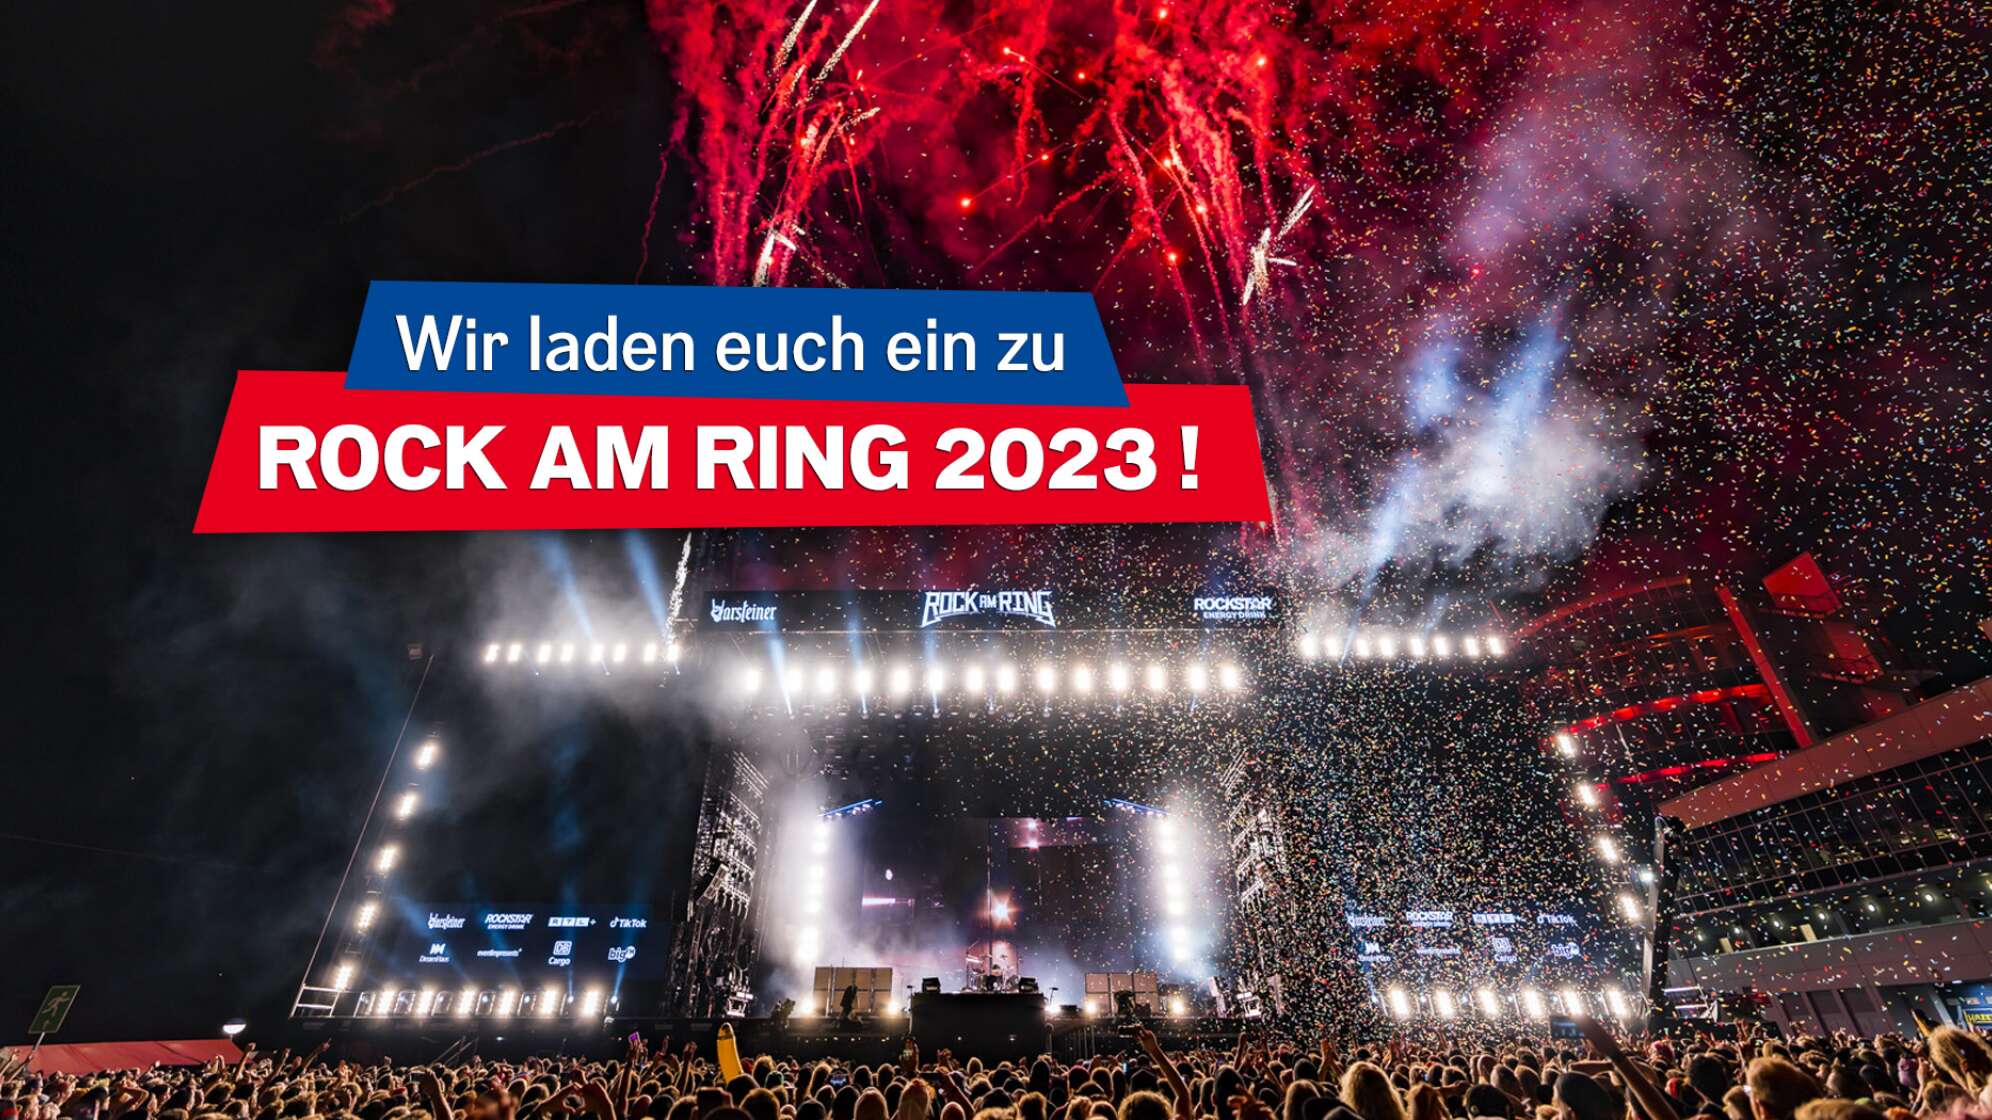 Ein Foto von Rock am Ring 2022 mit Blick auf die Bühne - helle Scheinwerfer und Feuerwerk am Himmel; Darauf der Text "Wir laden euch ein zu Rock am Ring 2023"!